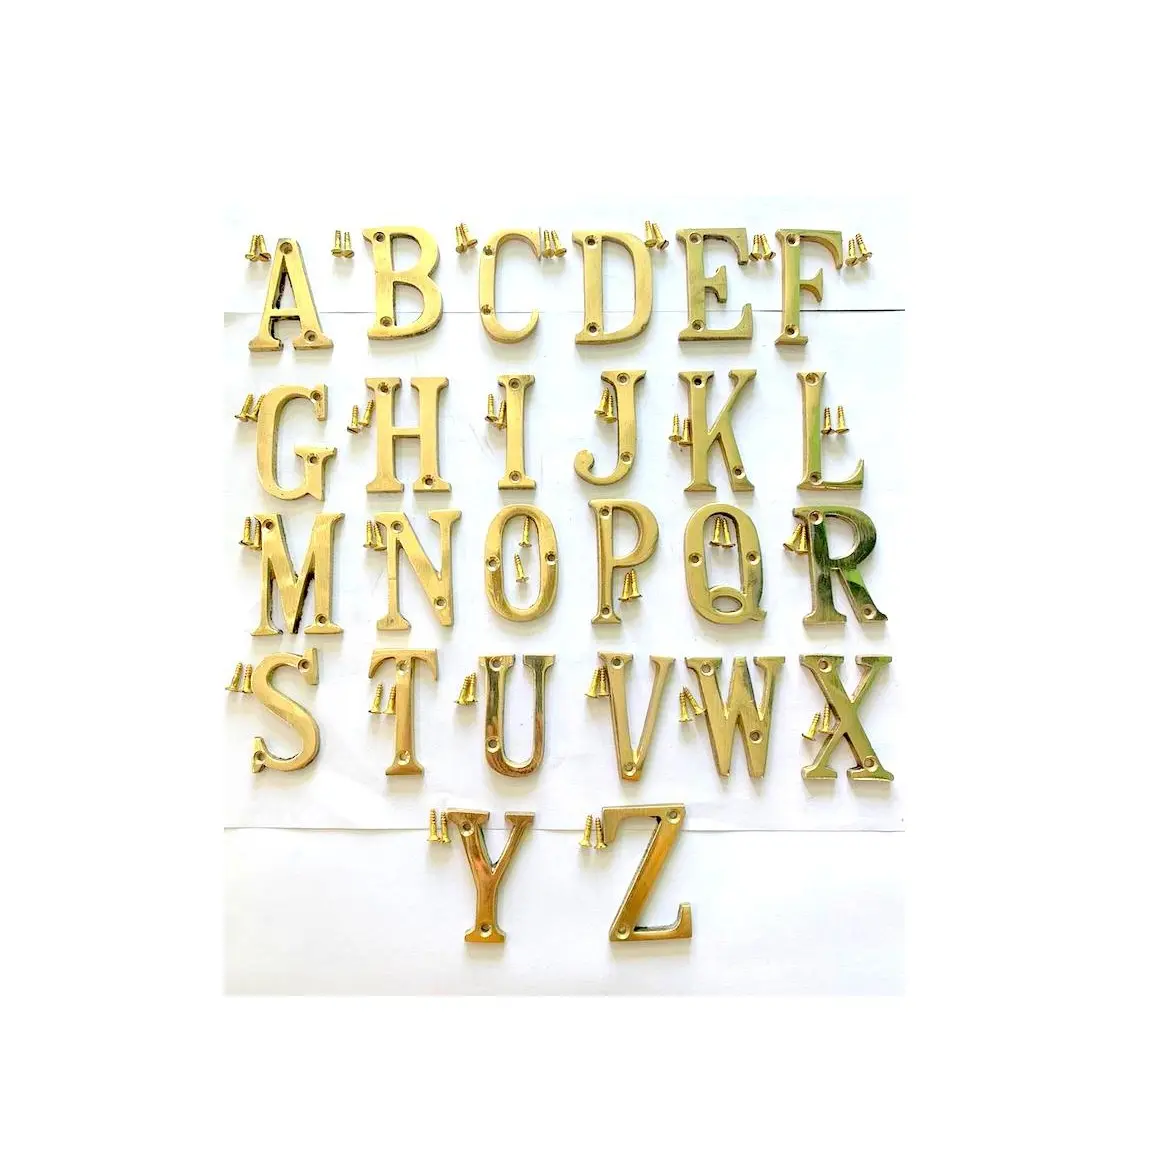 Alfabeti inglesi da 50 mm in ottone massiccio fatti a mano ad alta richiesta per giochi al coperto per bambini dall'esportatore indiano